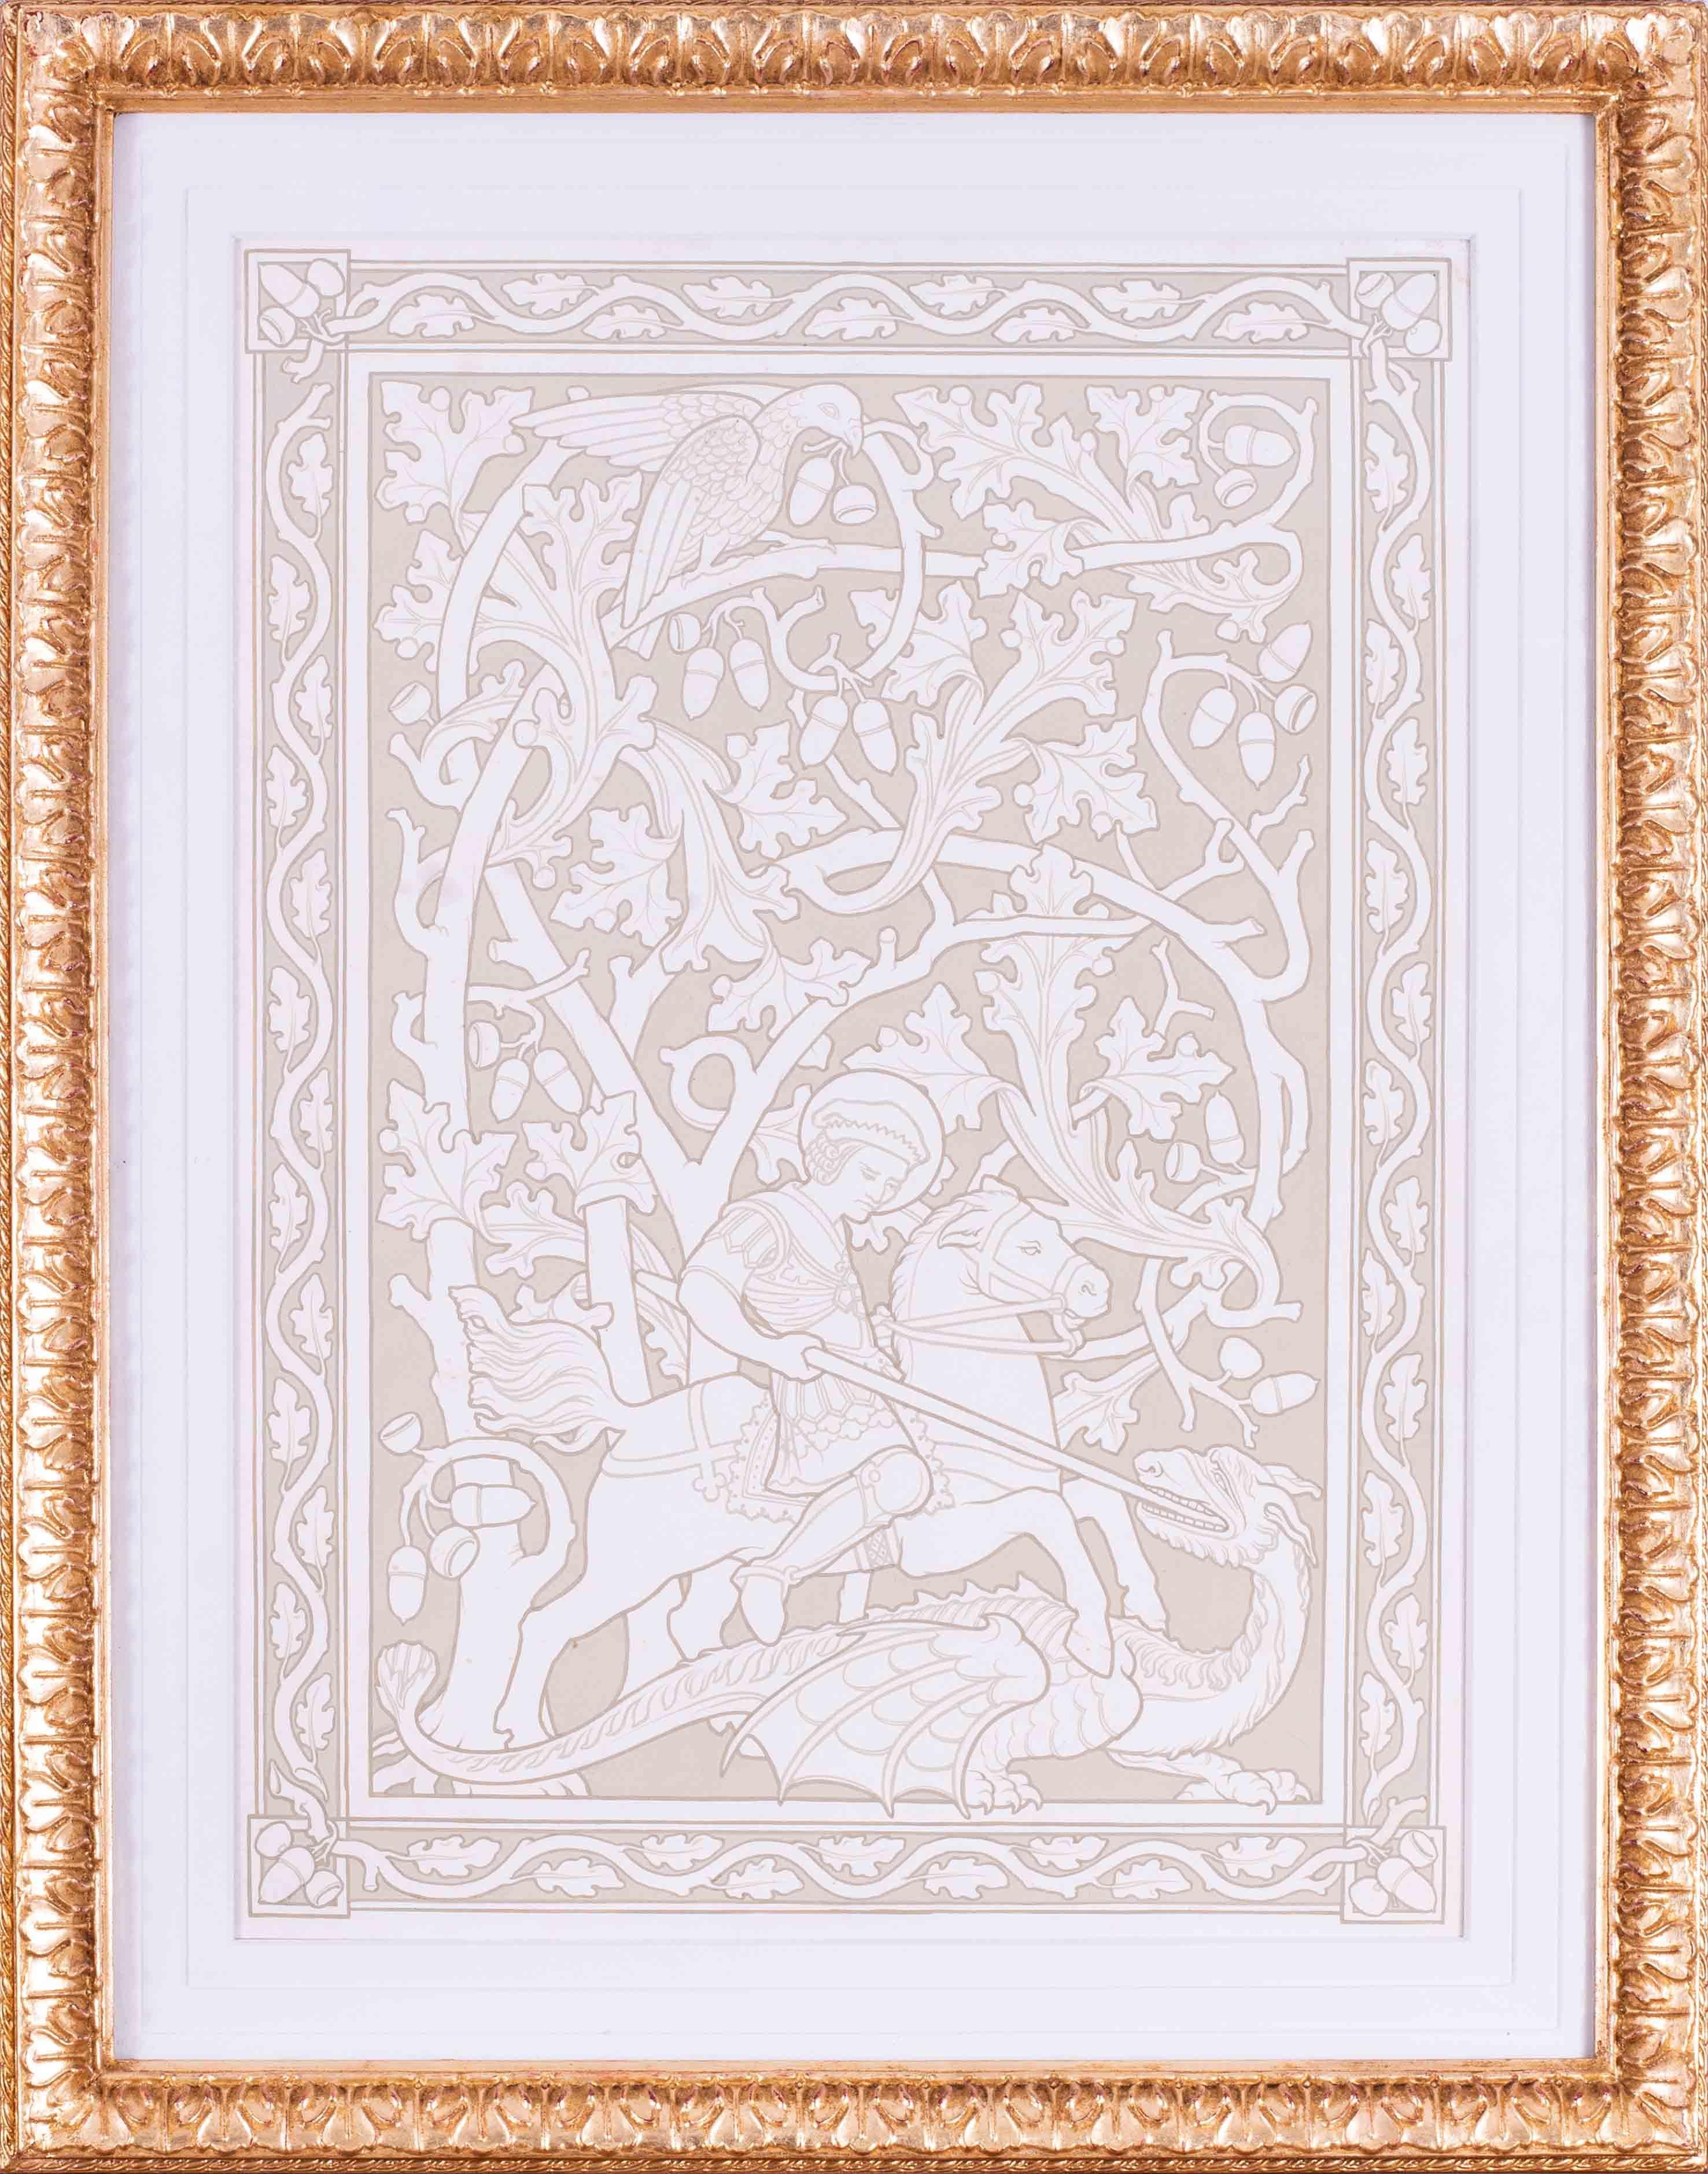 Edward Ridley (britannique, 1883-1946)
Saint-Georges et le dragon
Gouache
27 x 19.1/4 in. (68.7 x 48.8 cm.)
Ce dessin, inspiré d'un vitrail du XIVe siècle, a été accepté pour l'obtention d'un certificat AMC lorsqu'il avait 23 ans, en 1906, à South